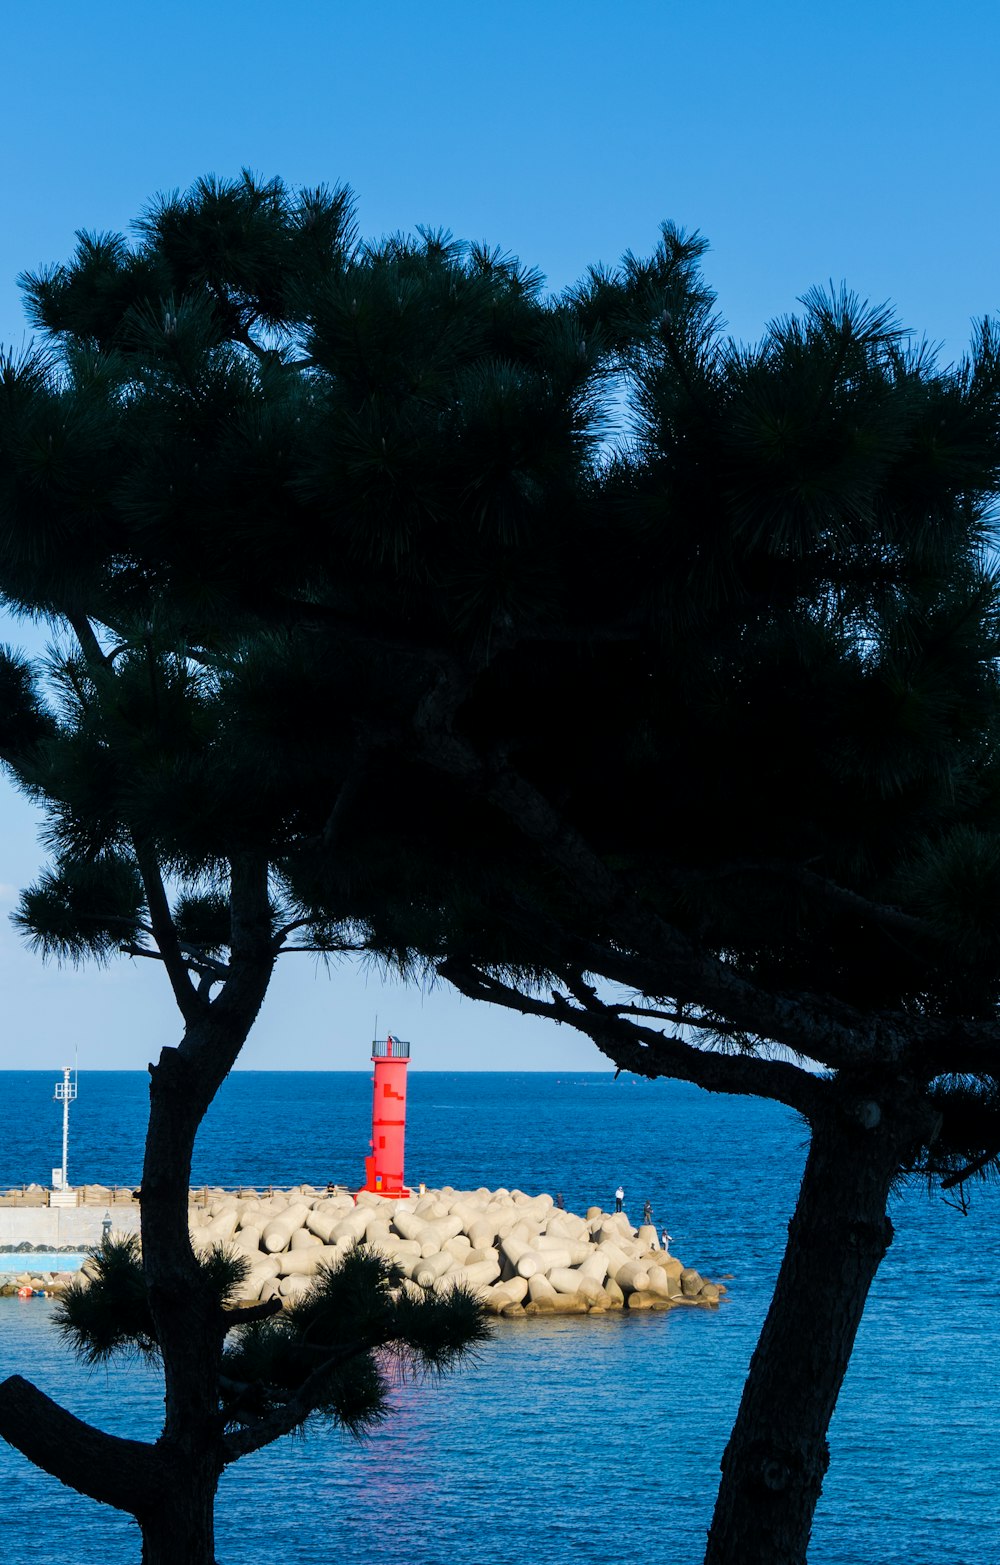 ein Rotlichtturm, der auf einem Baum neben dem Meer sitzt